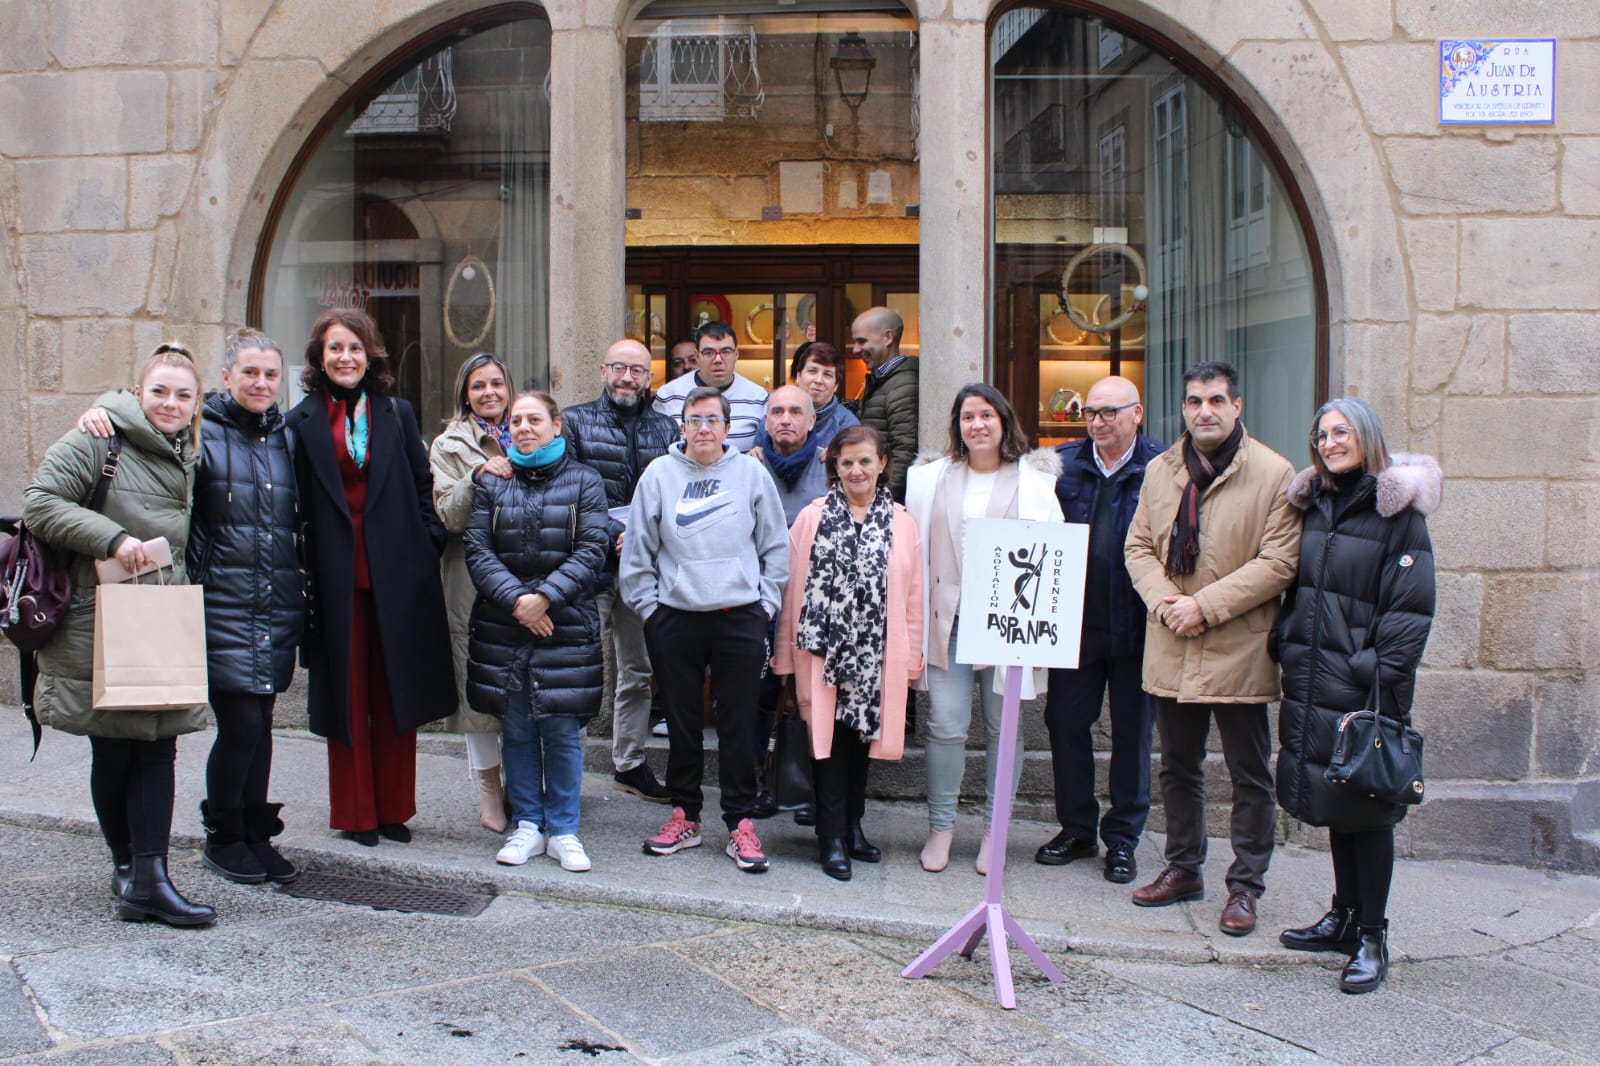 A Xunta destaca o compromiso social de Aspanas durante a visita ao seu Mercado de Nadal en Ourense